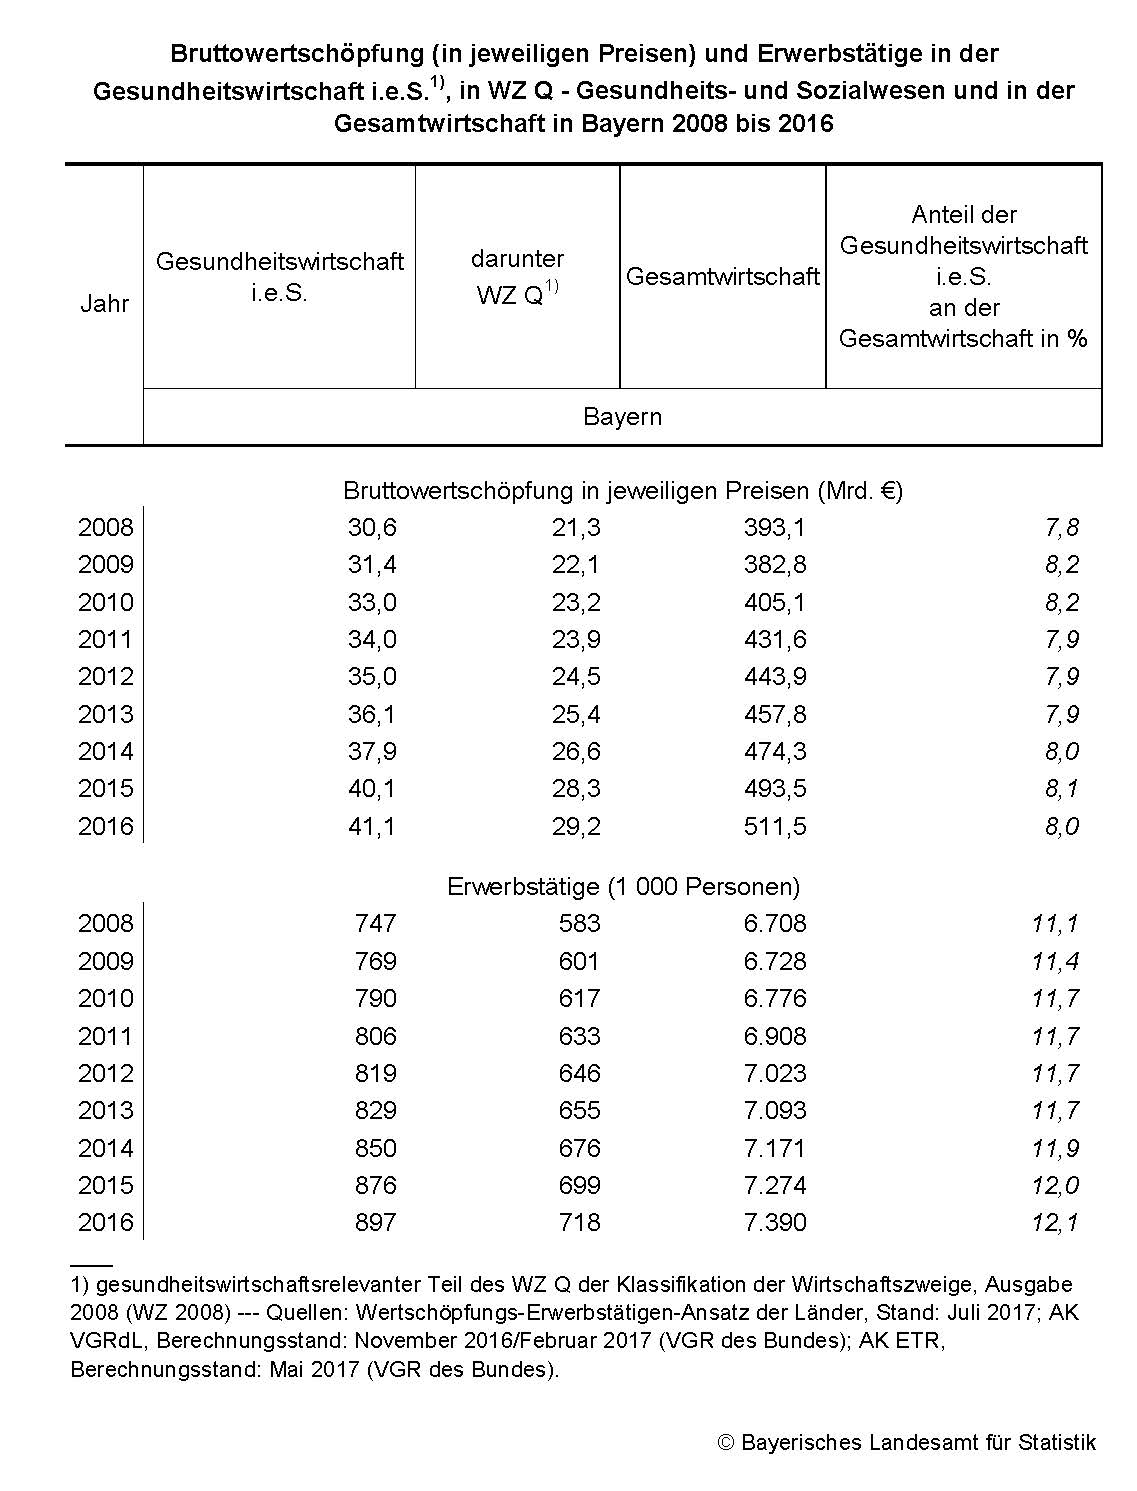 Bruttowertschöpfung und Erwerbstätige in der Gesundheitswirtschaft und in der Gesamtwirtschaft in Bayern 2008 bis 2016